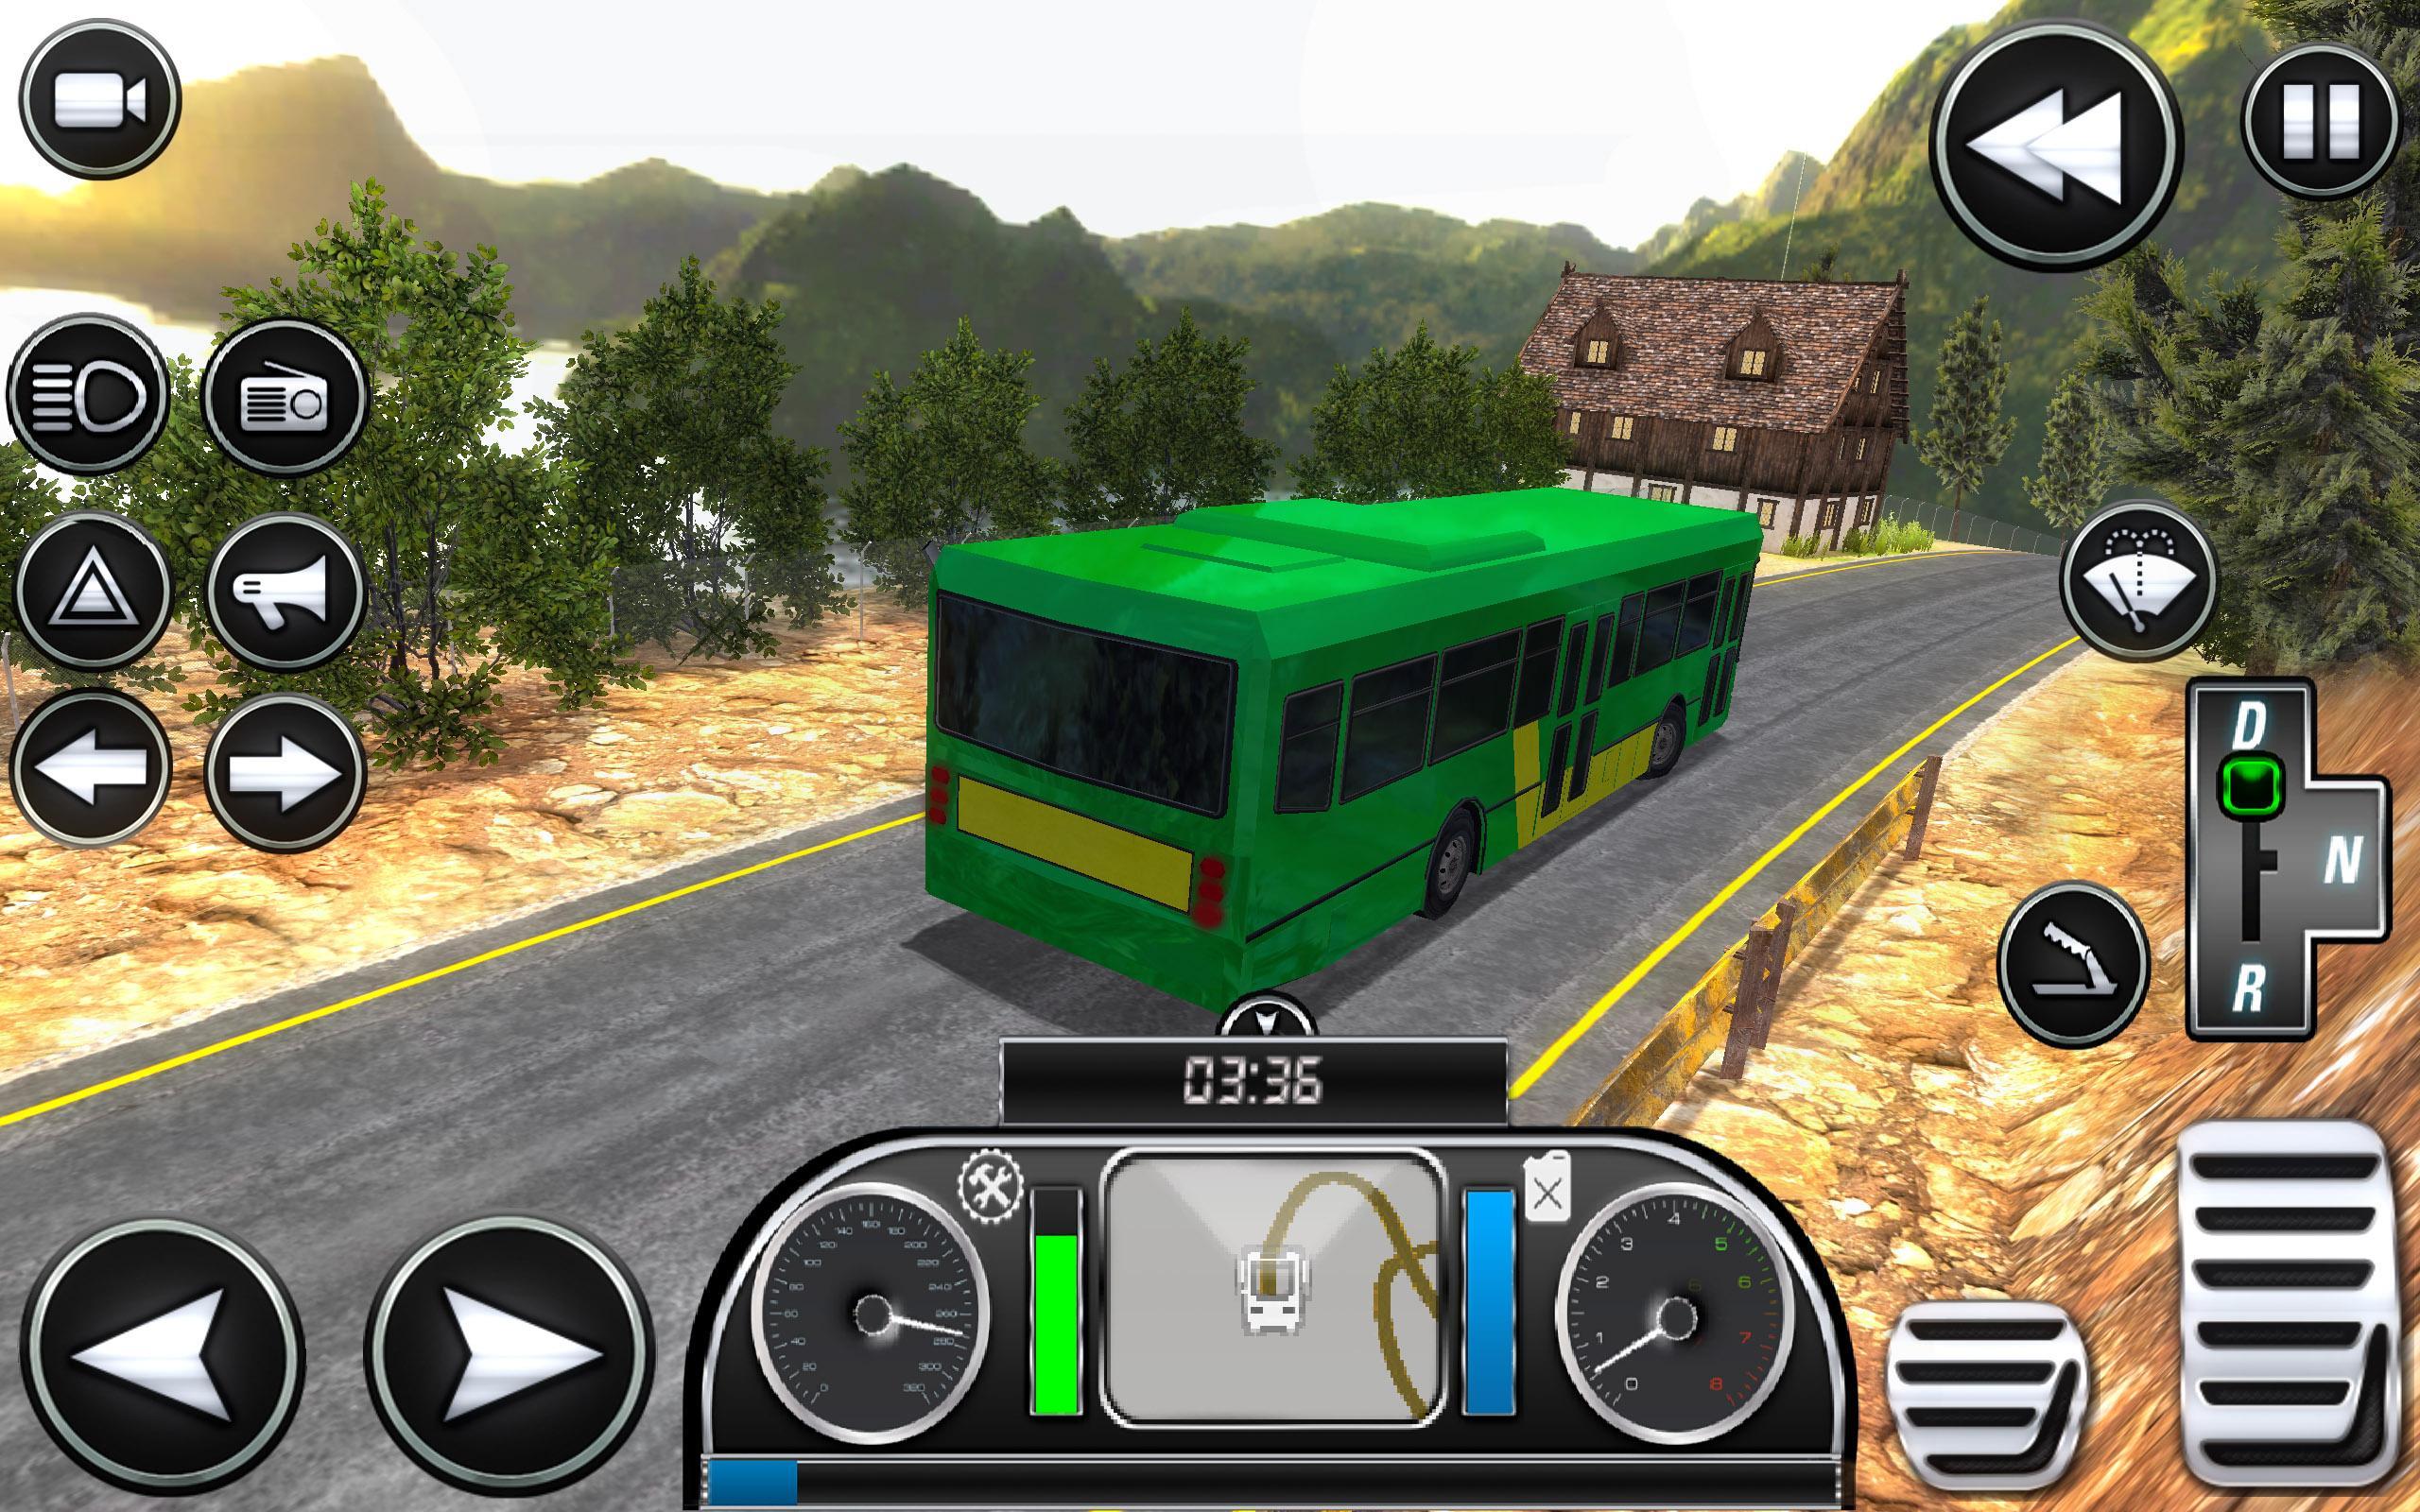 Бесплатная игра симулятор 18. Симулятор автобуса на андроид. Топ симулятор автобуса. Номера в игре симулятор автобуса. Симуляторы автобусов на андроид с игрой по сети.